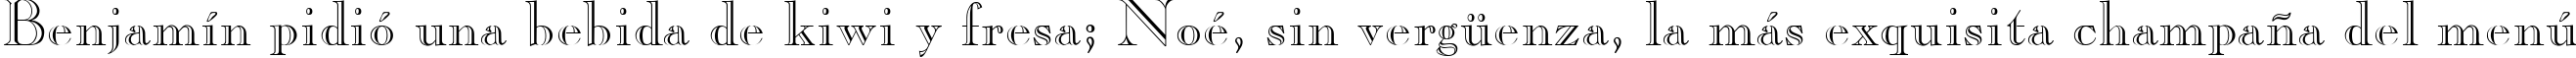 Пример написания шрифтом CasperOpenFace Plain:001.003 текста на испанском